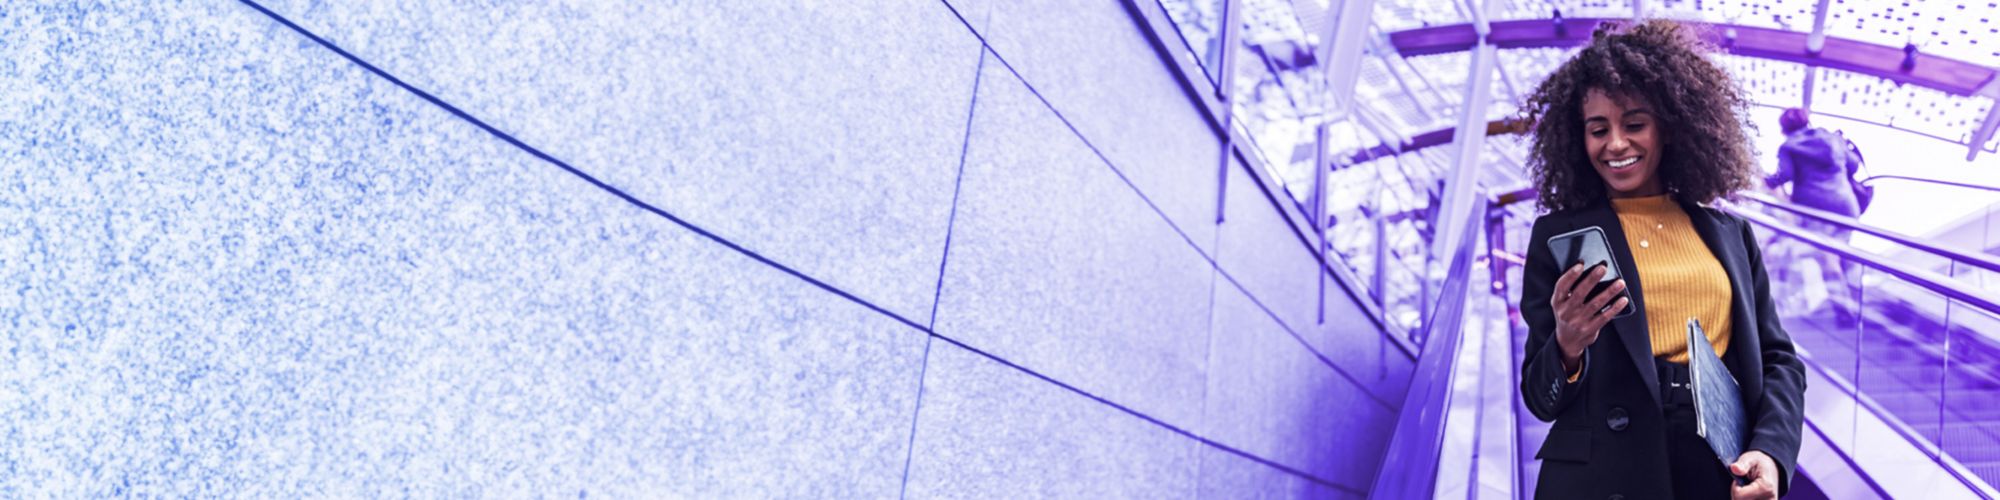 Persona en una escalera mecánica dentro de un edificio moderno. La persona sostiene un teléfono móvil y una carpeta azul. El fondo presenta una estructura de techo de vidrio y paredes grises. Otra persona también está subiendo la escalera mecánica en el fondo. La iluminación natural del día se filtra a través del techo de vidrio, iluminando el espacio interior.